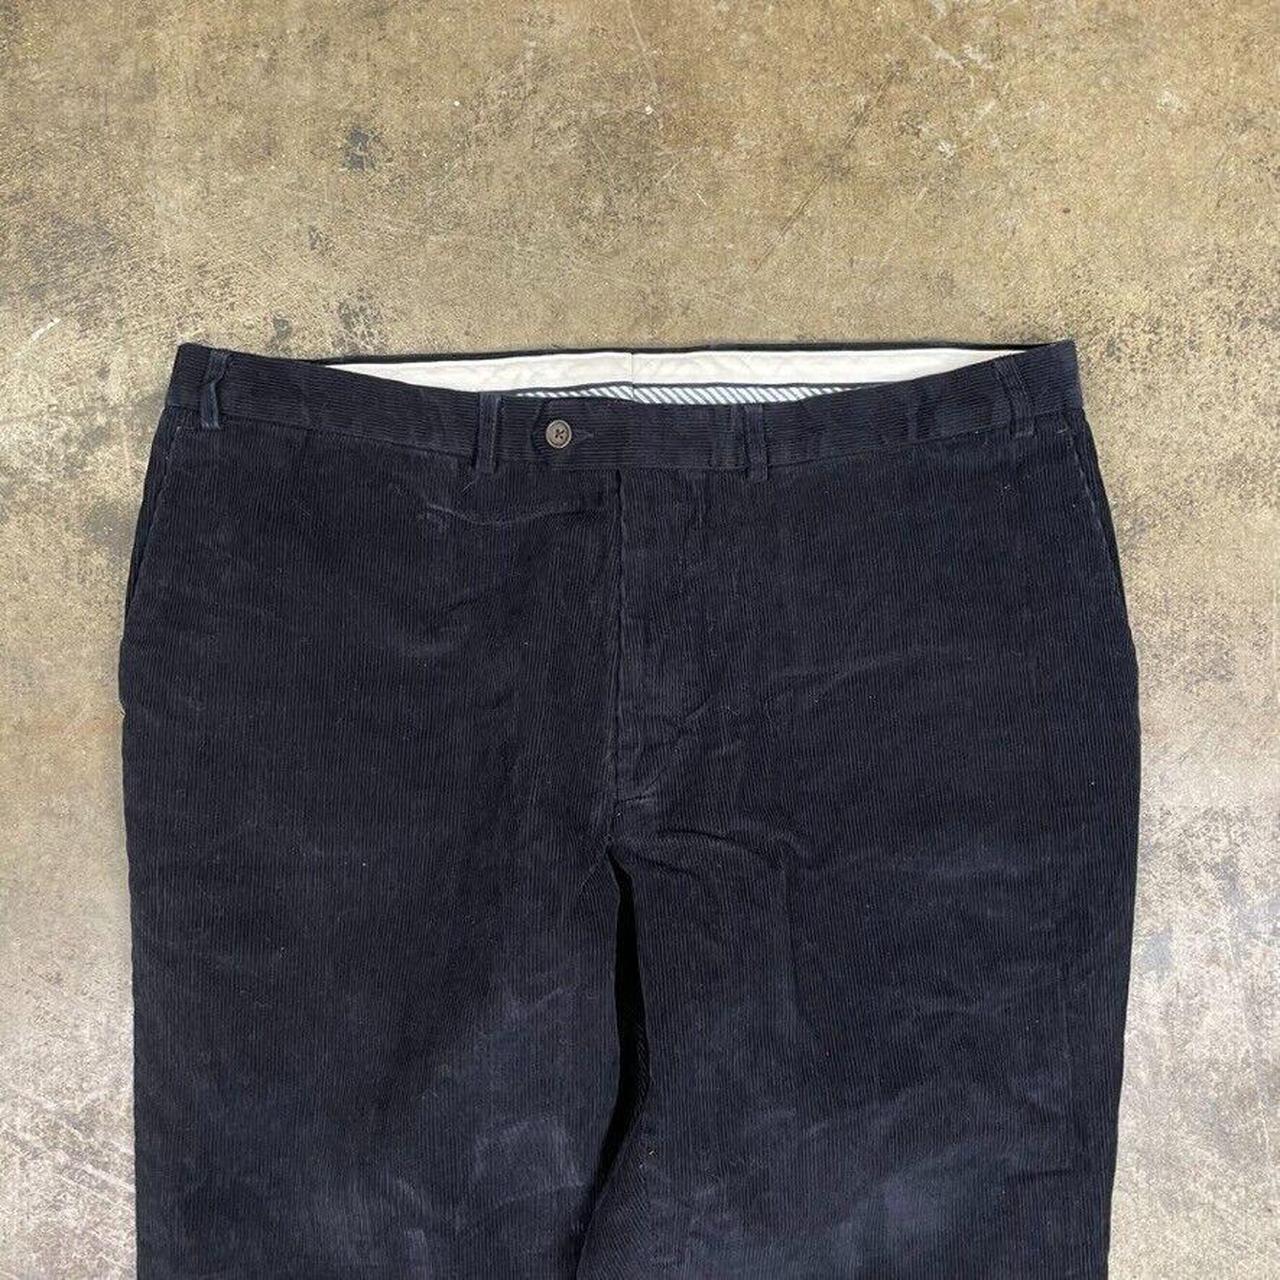 Lauren Ralph Lauren Jumbo Cord Trousers Vintage 90s... - Depop